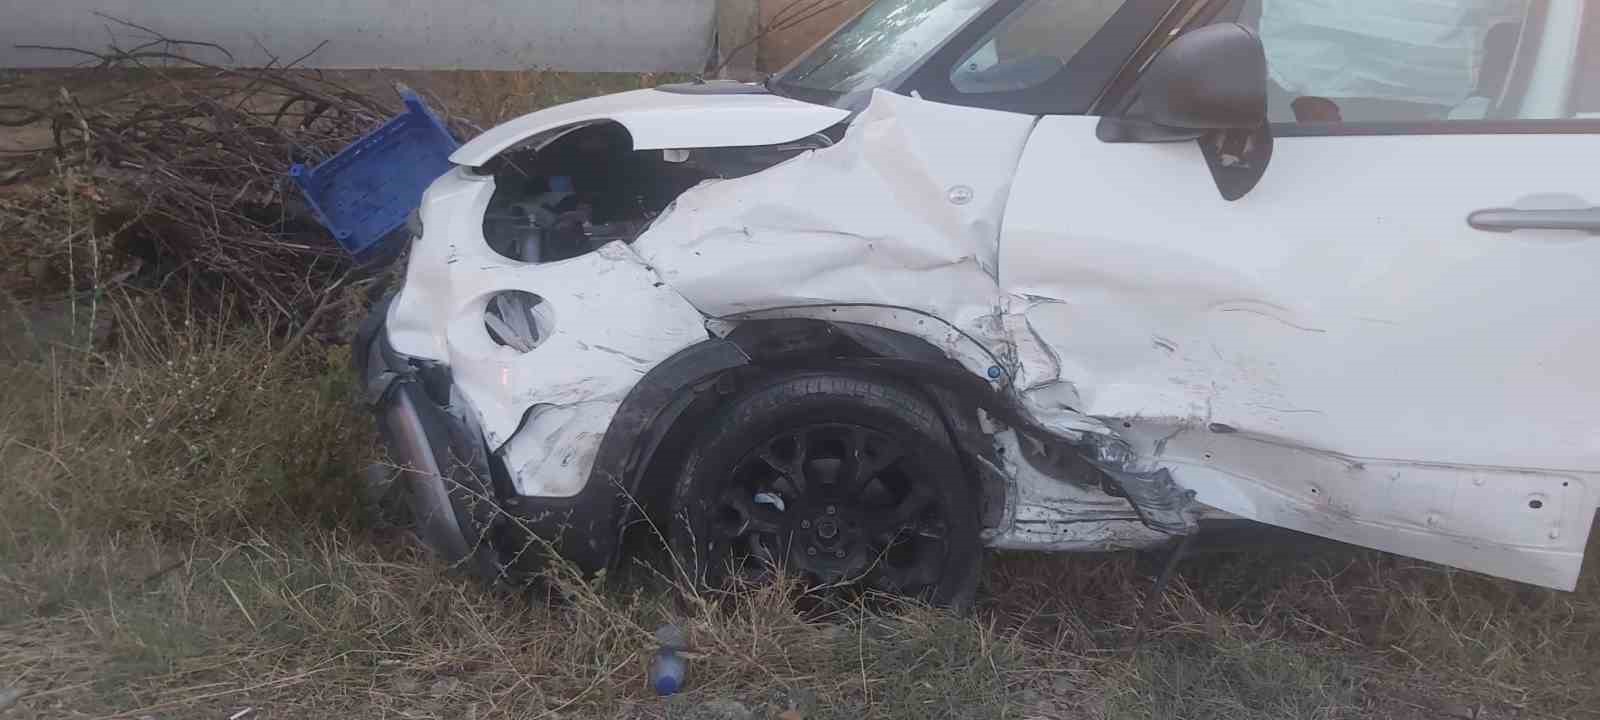 Virajı alamayan otomobil karşıdan gelen iki otomobile çarptı: 4 yaralı